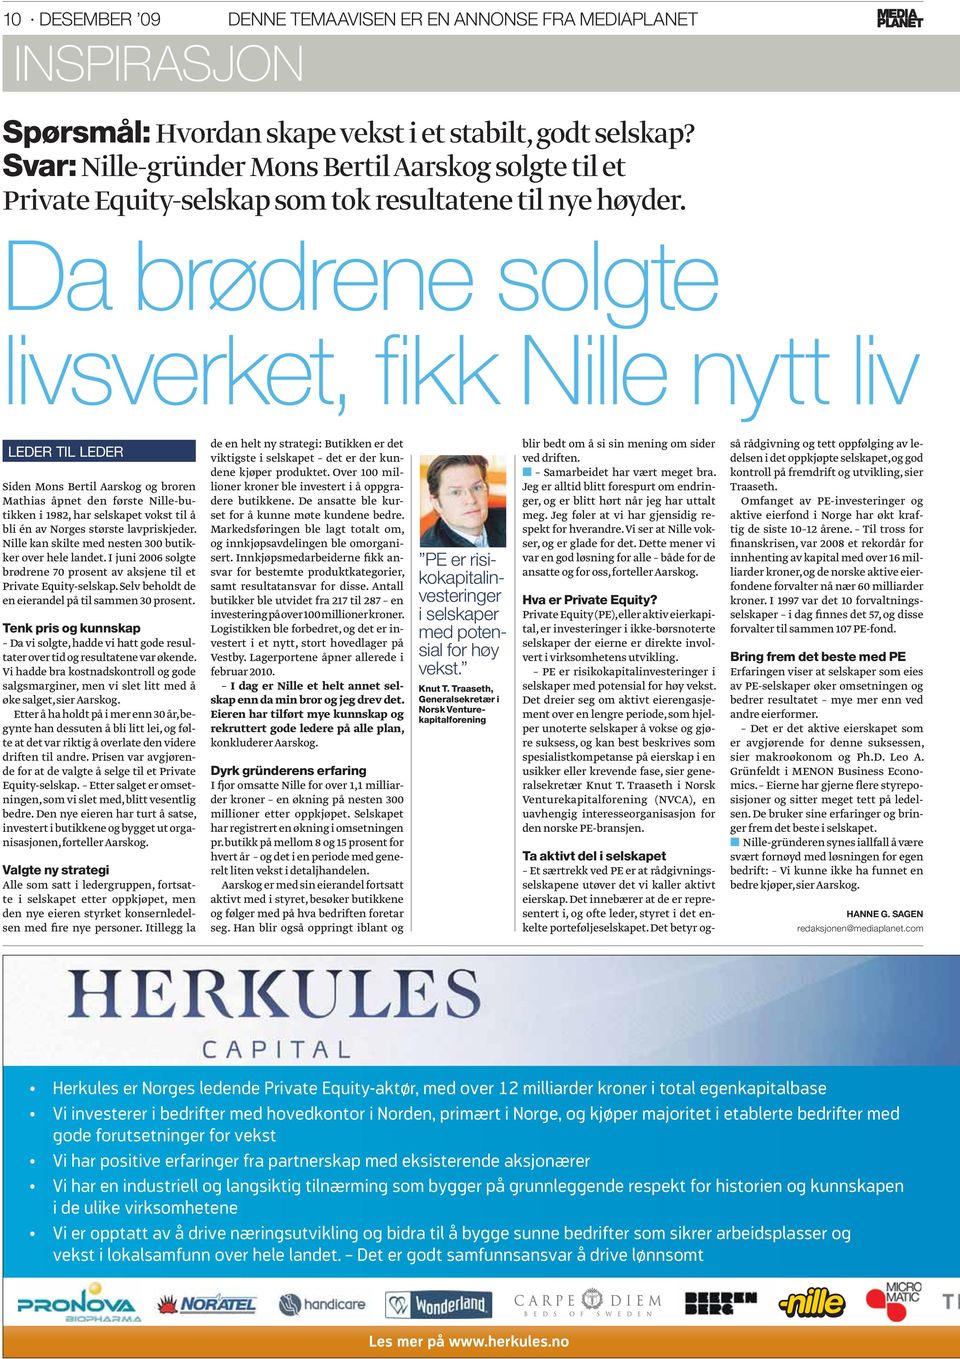 Da brødrene solgte livsverket, fi kk Nille nytt liv LEDER TIL LEDER Siden Mons Bertil Aarskog og broren Mathias åpnet den første Nille-butikken i 1982, har selskapet vokst til å bli én av Norges